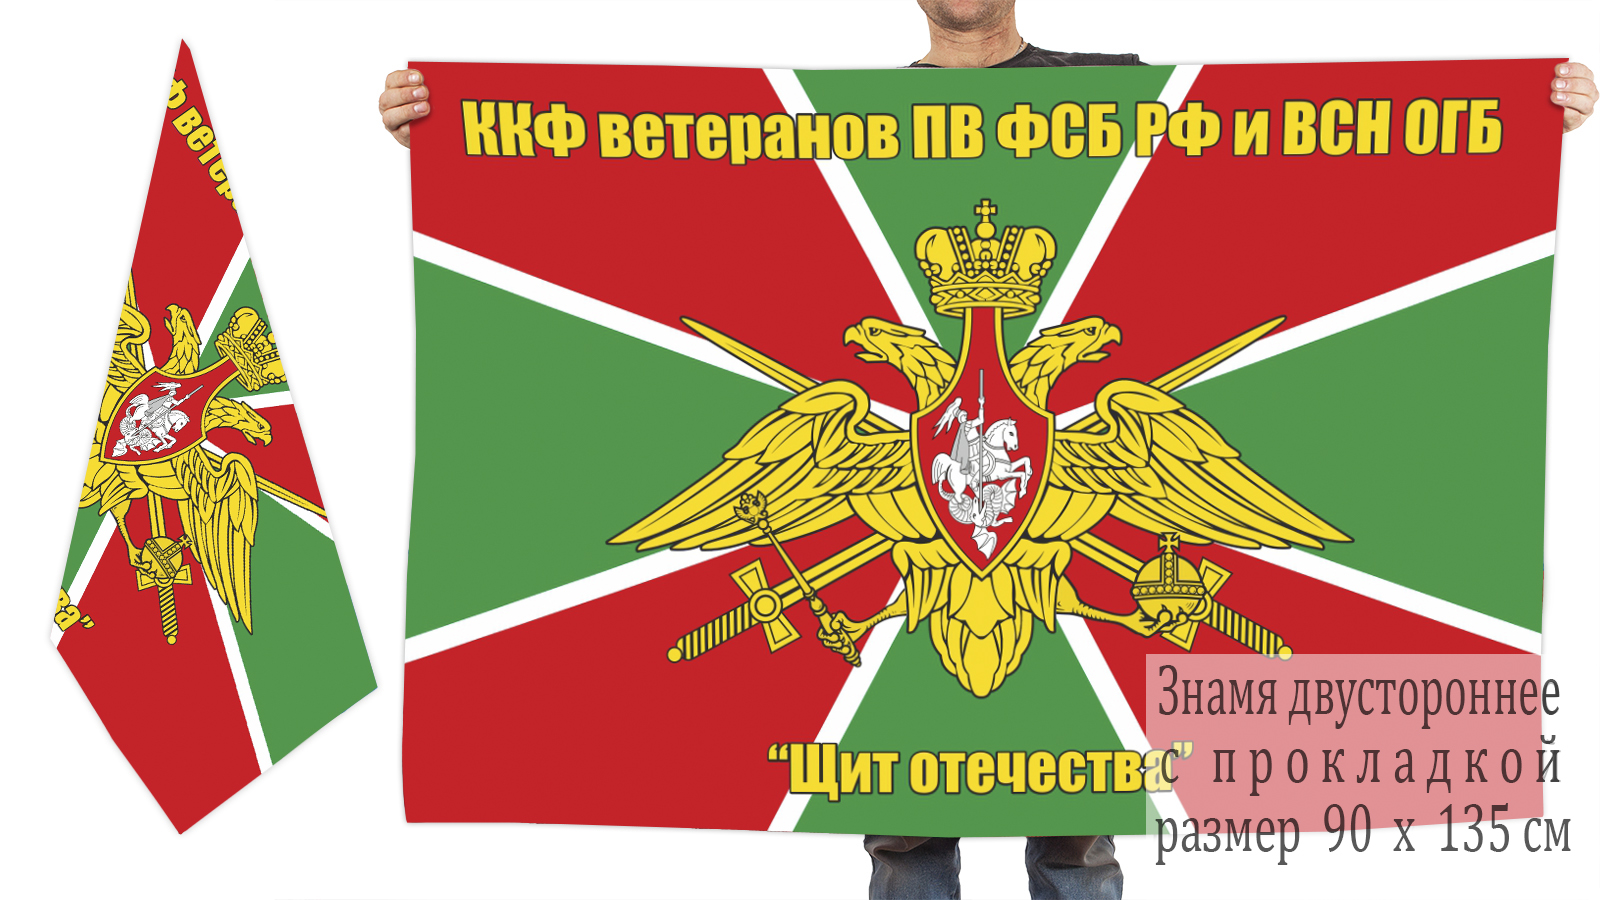 Двусторонний флаг ККФ ветеранов ПВ и ВСН ОГБ "Щит Отечества"